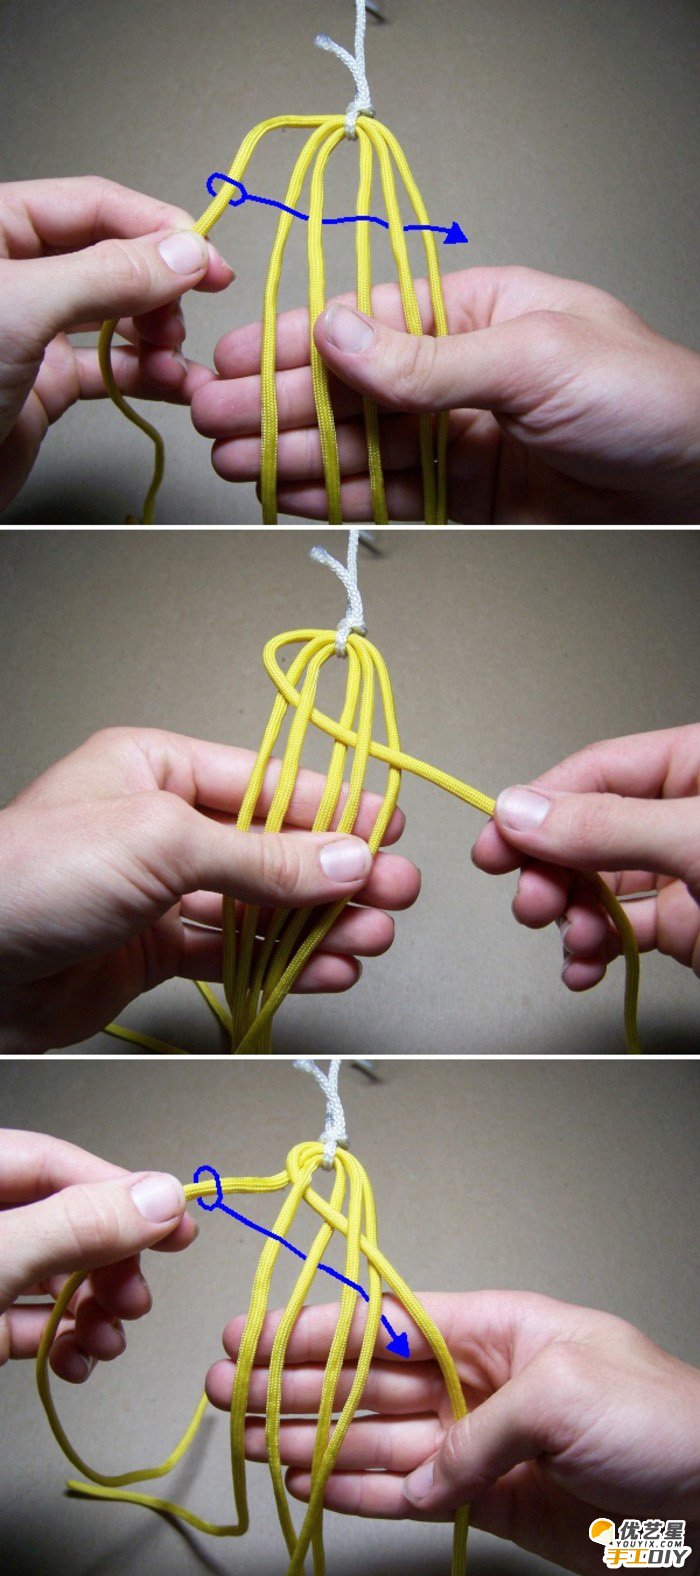 六股绳简单经典手工手工编织教程图解 简单打造 一条简洁宽松的手绳_www.youyix.com